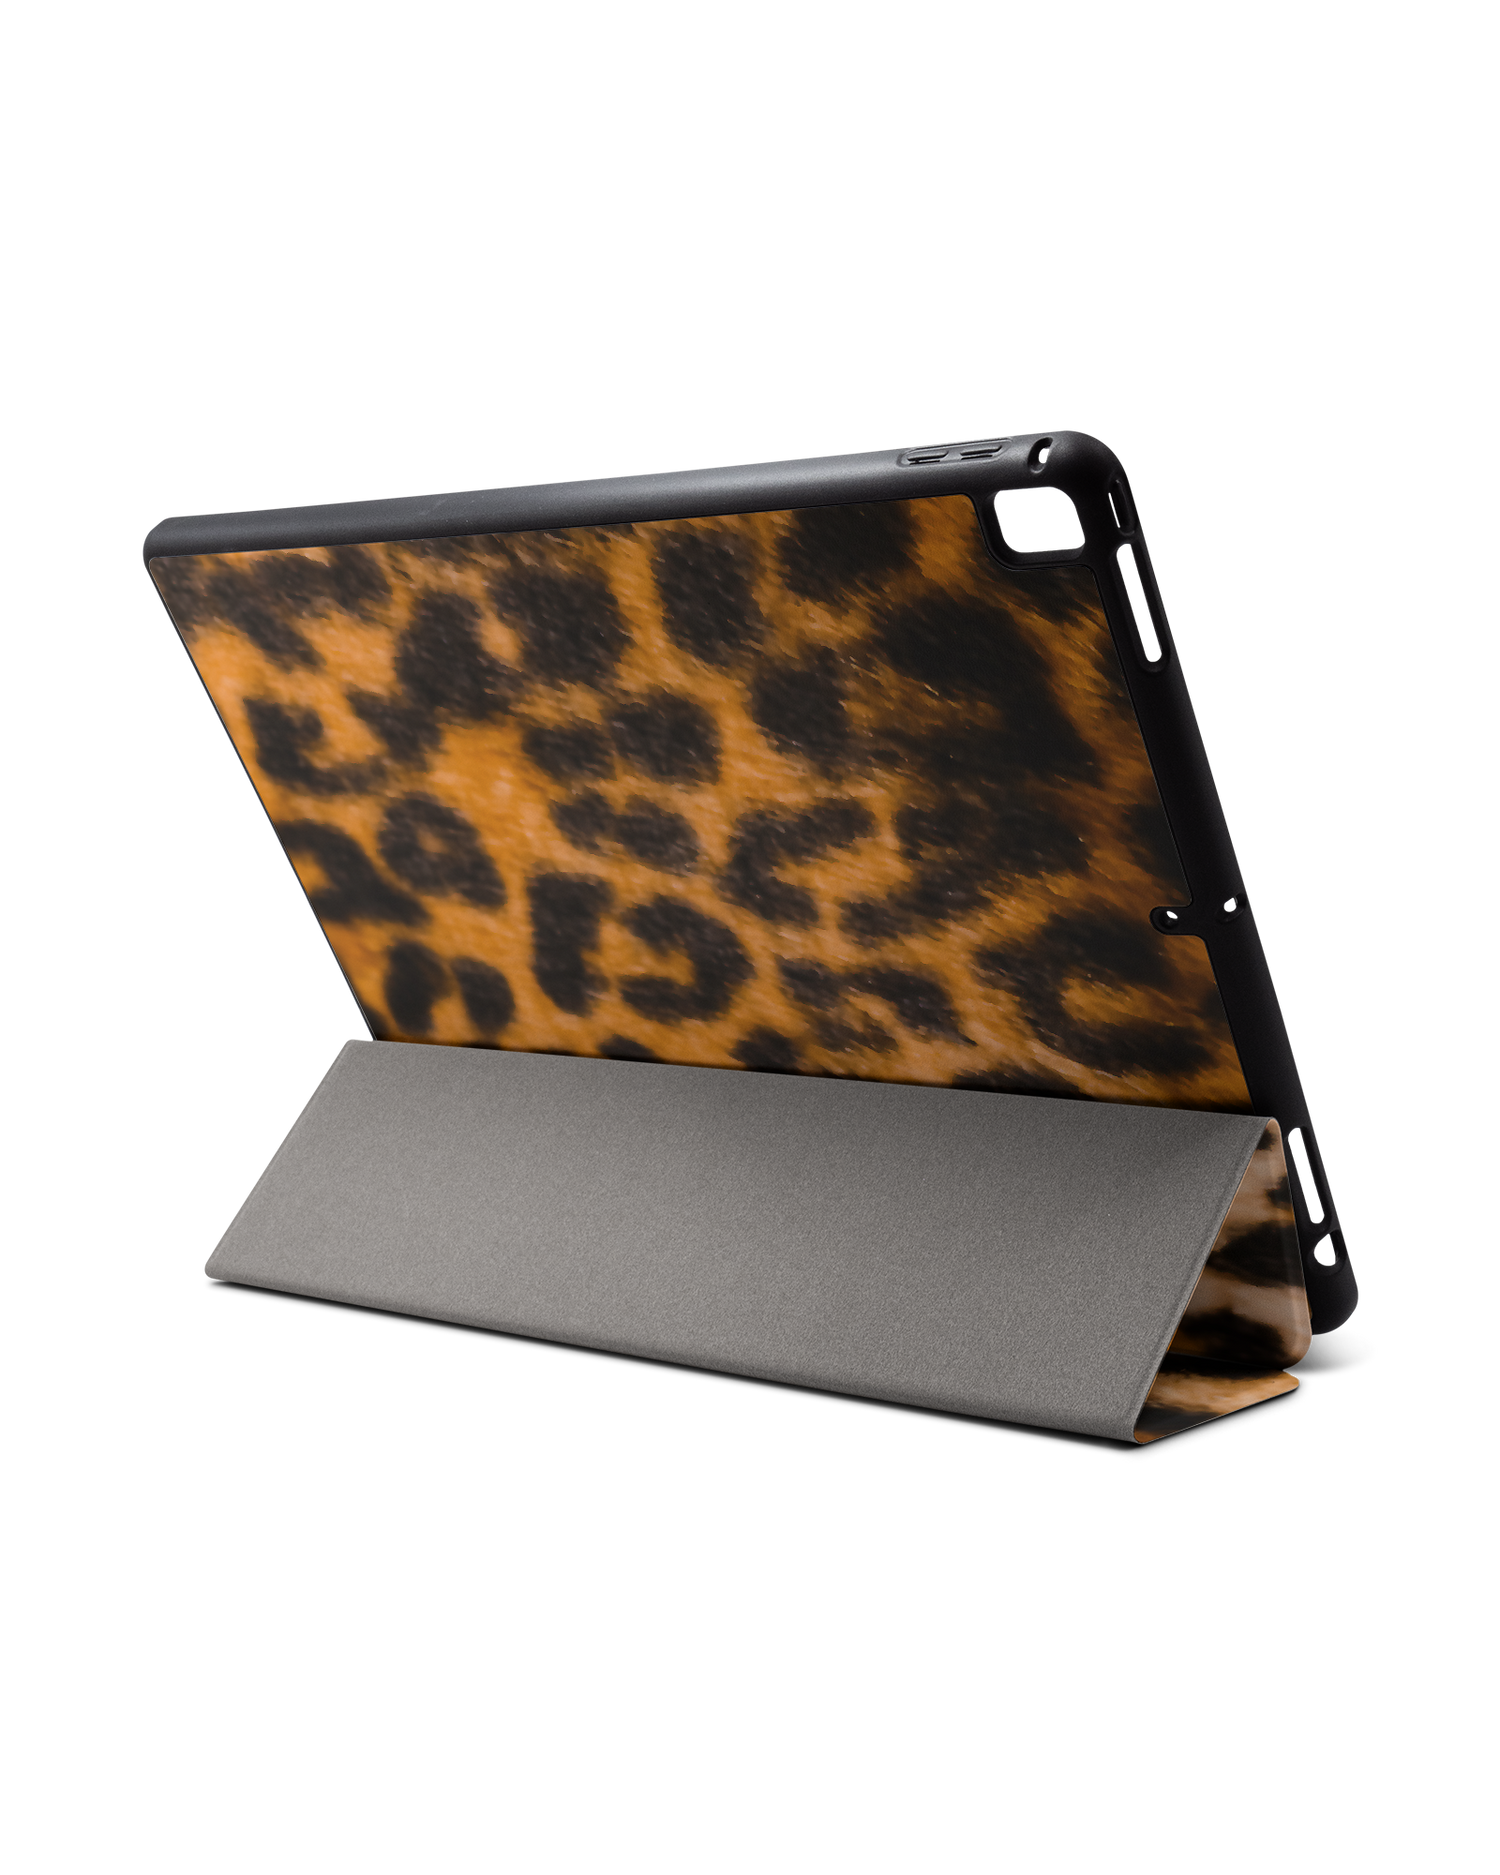 Leopard Pattern iPad Hülle mit Stifthalter für Apple iPad Pro 2 12.9'' (2017): Aufgestellt im Querformat von hinten